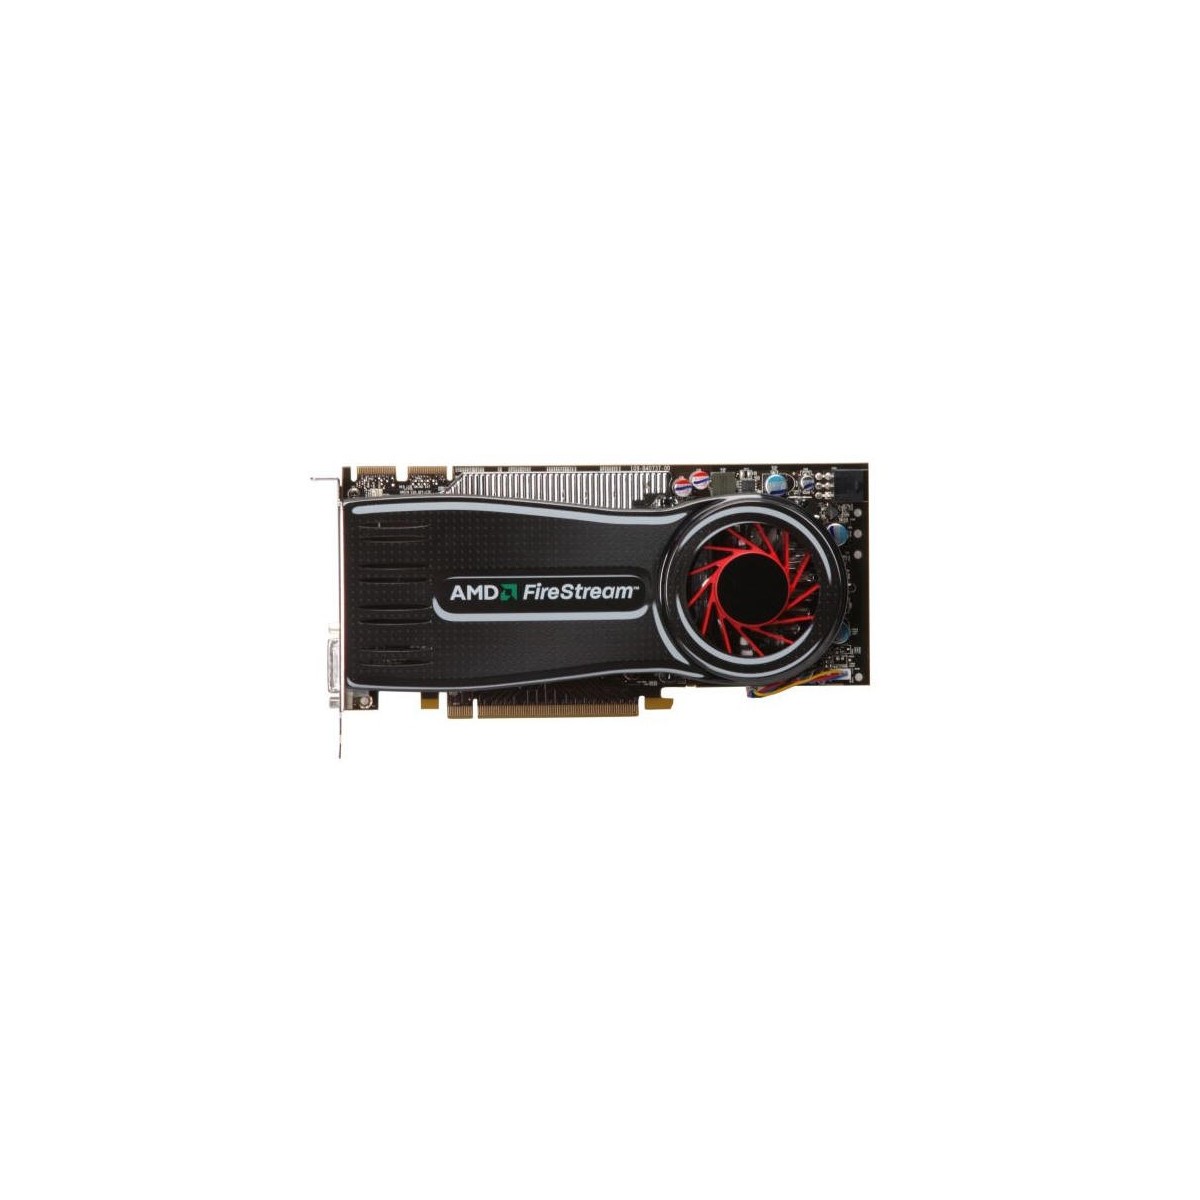 AMD 100-505550 - 2 GB - GDDR3 - 256 bit - 2560 x 1600 pixels - PCI Express 2.0